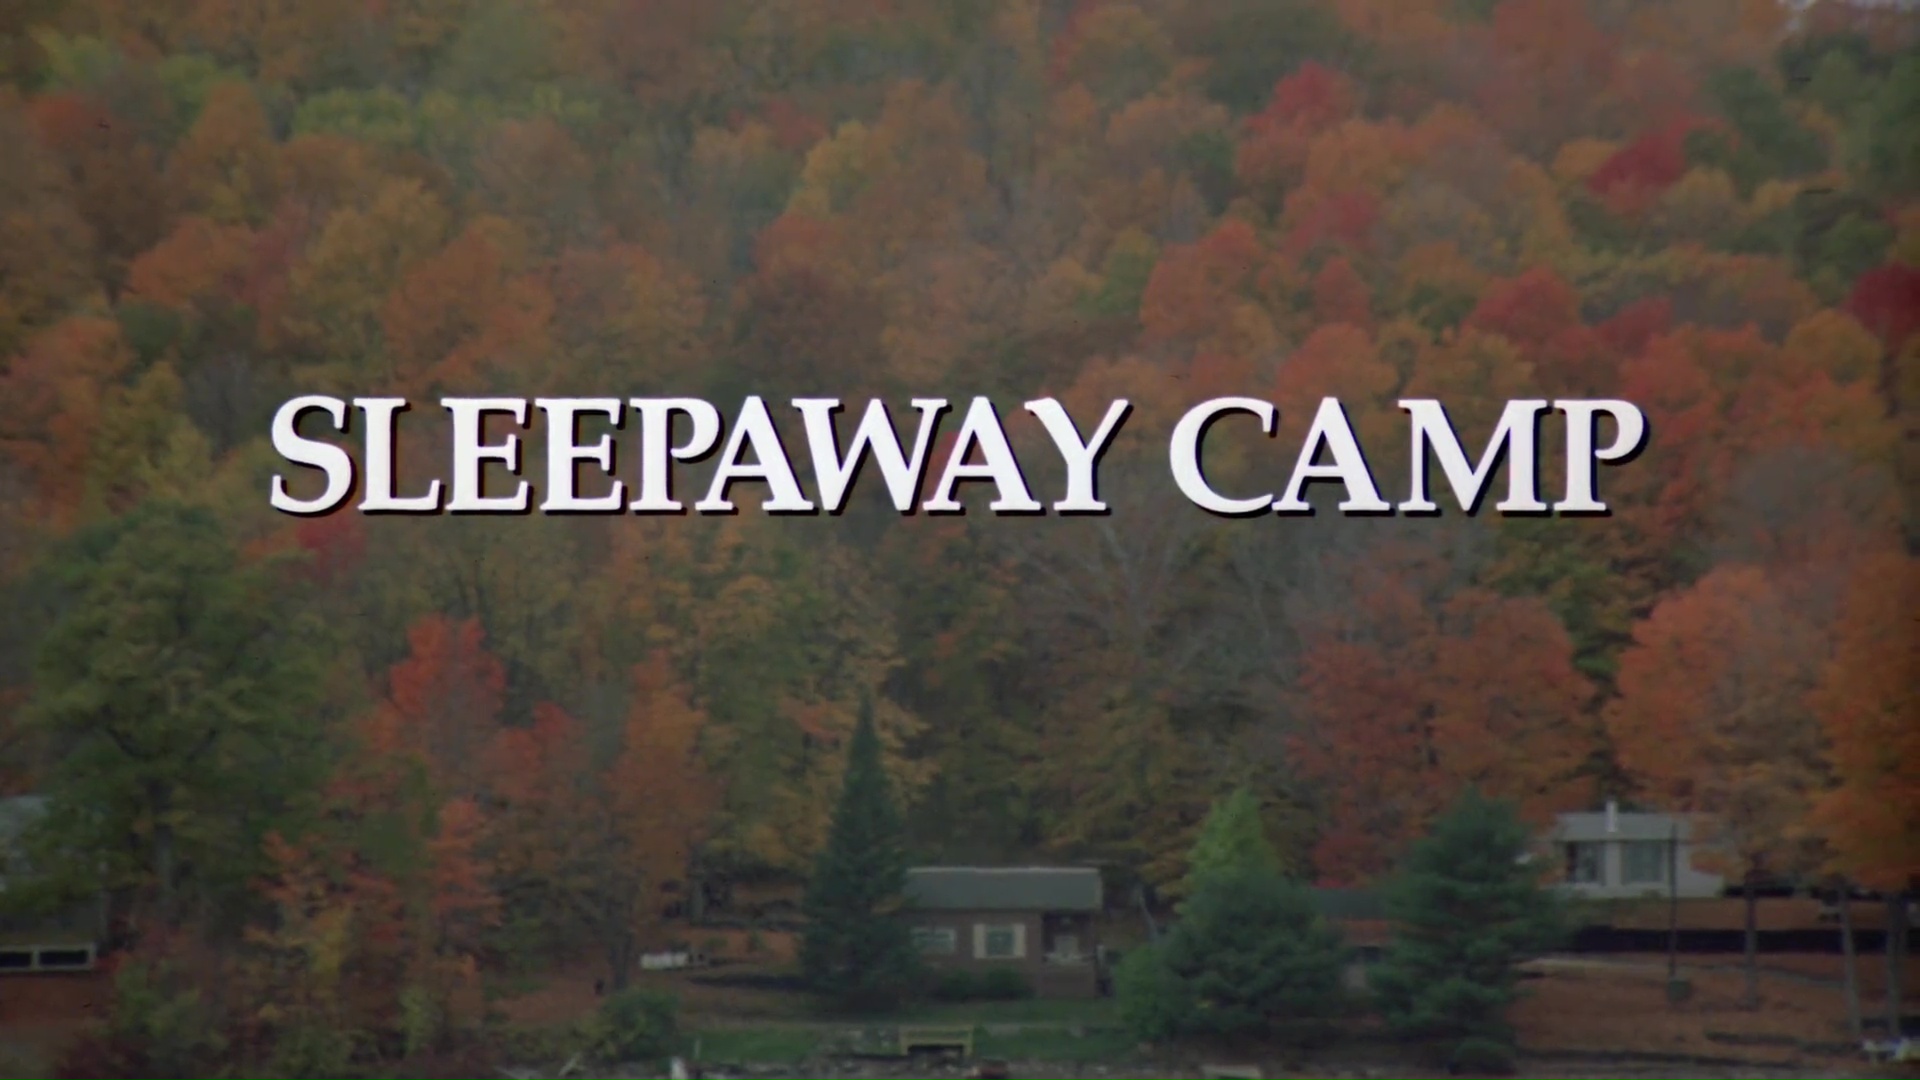 MASSACRE AU CAMP D’ÉTÉ (Sleepaway Camp) de Robert Hiltzick (1983)